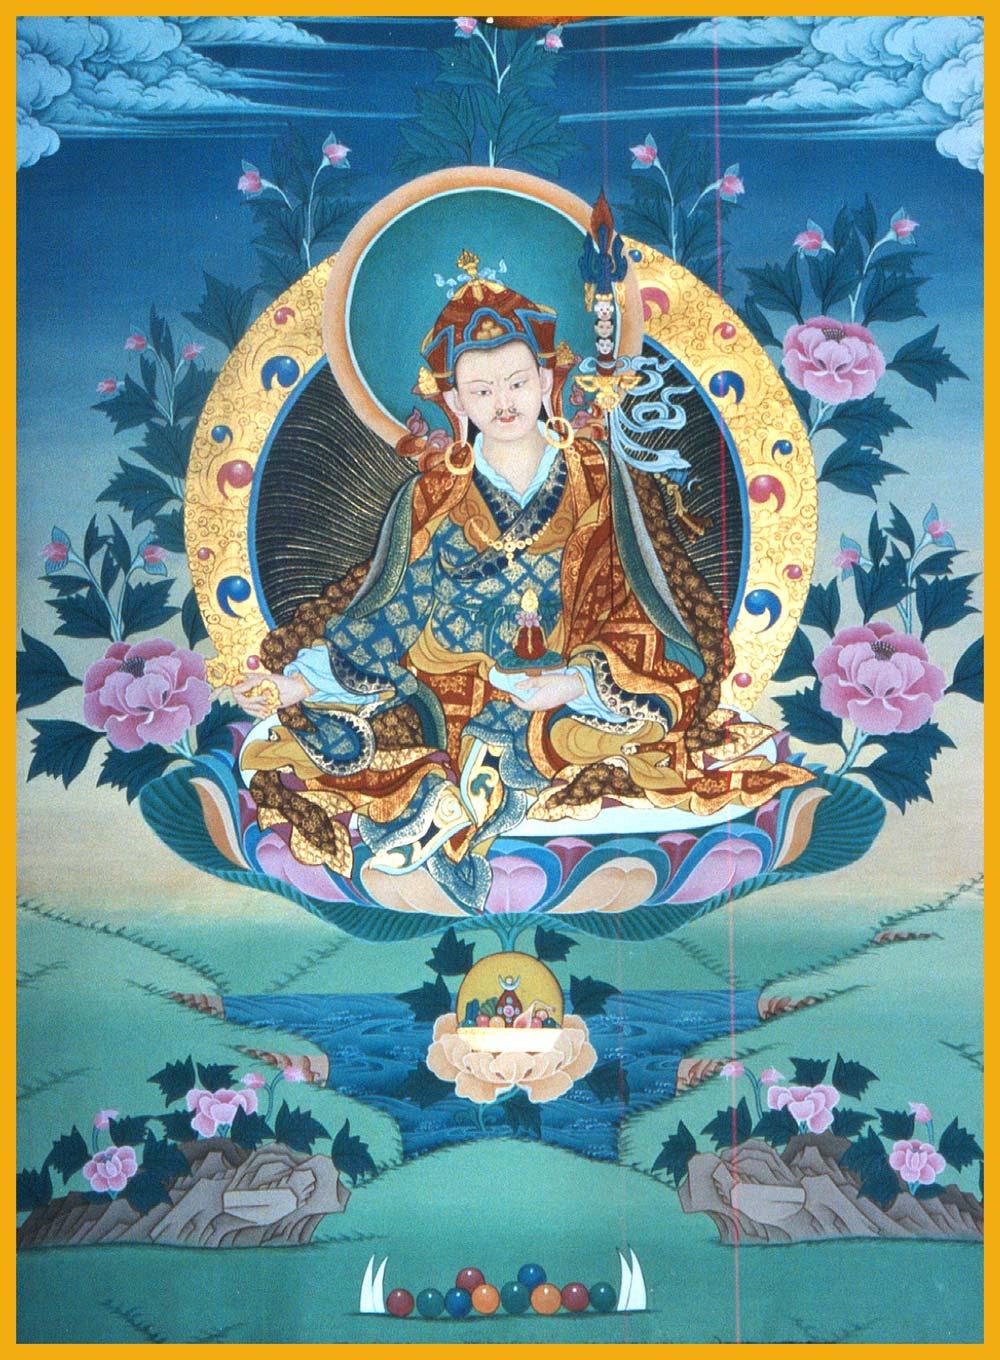 Padmasambhava (Guru Rinpoche) in the Riwo Sang Chod